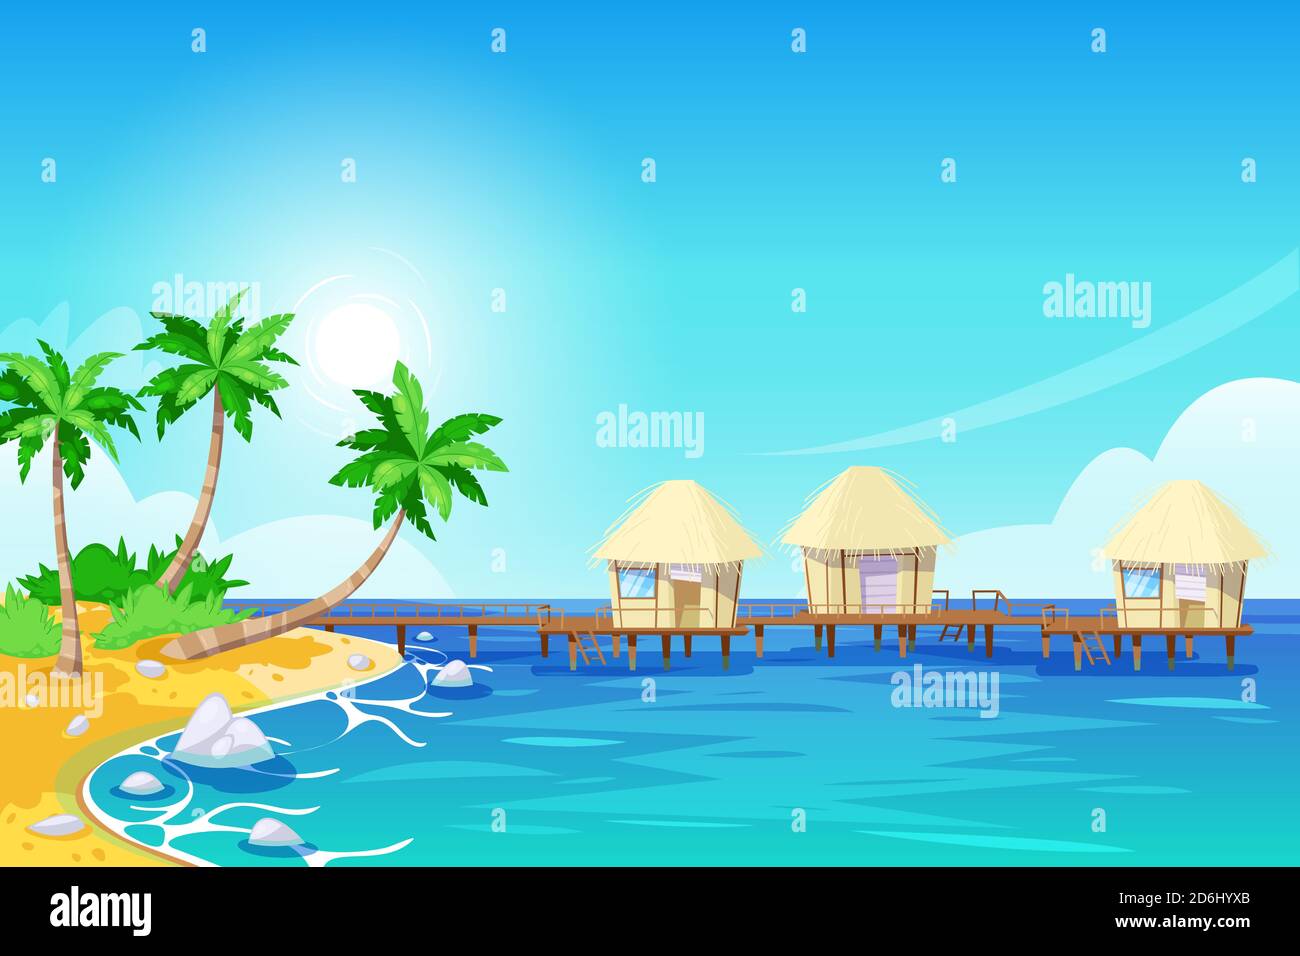 Tropische Insellandschaft, Vektorgrafik. Palmen, Strand und Bungalows im Meer. Sommer Reise Cartoon Hintergrund. Stock Vektor